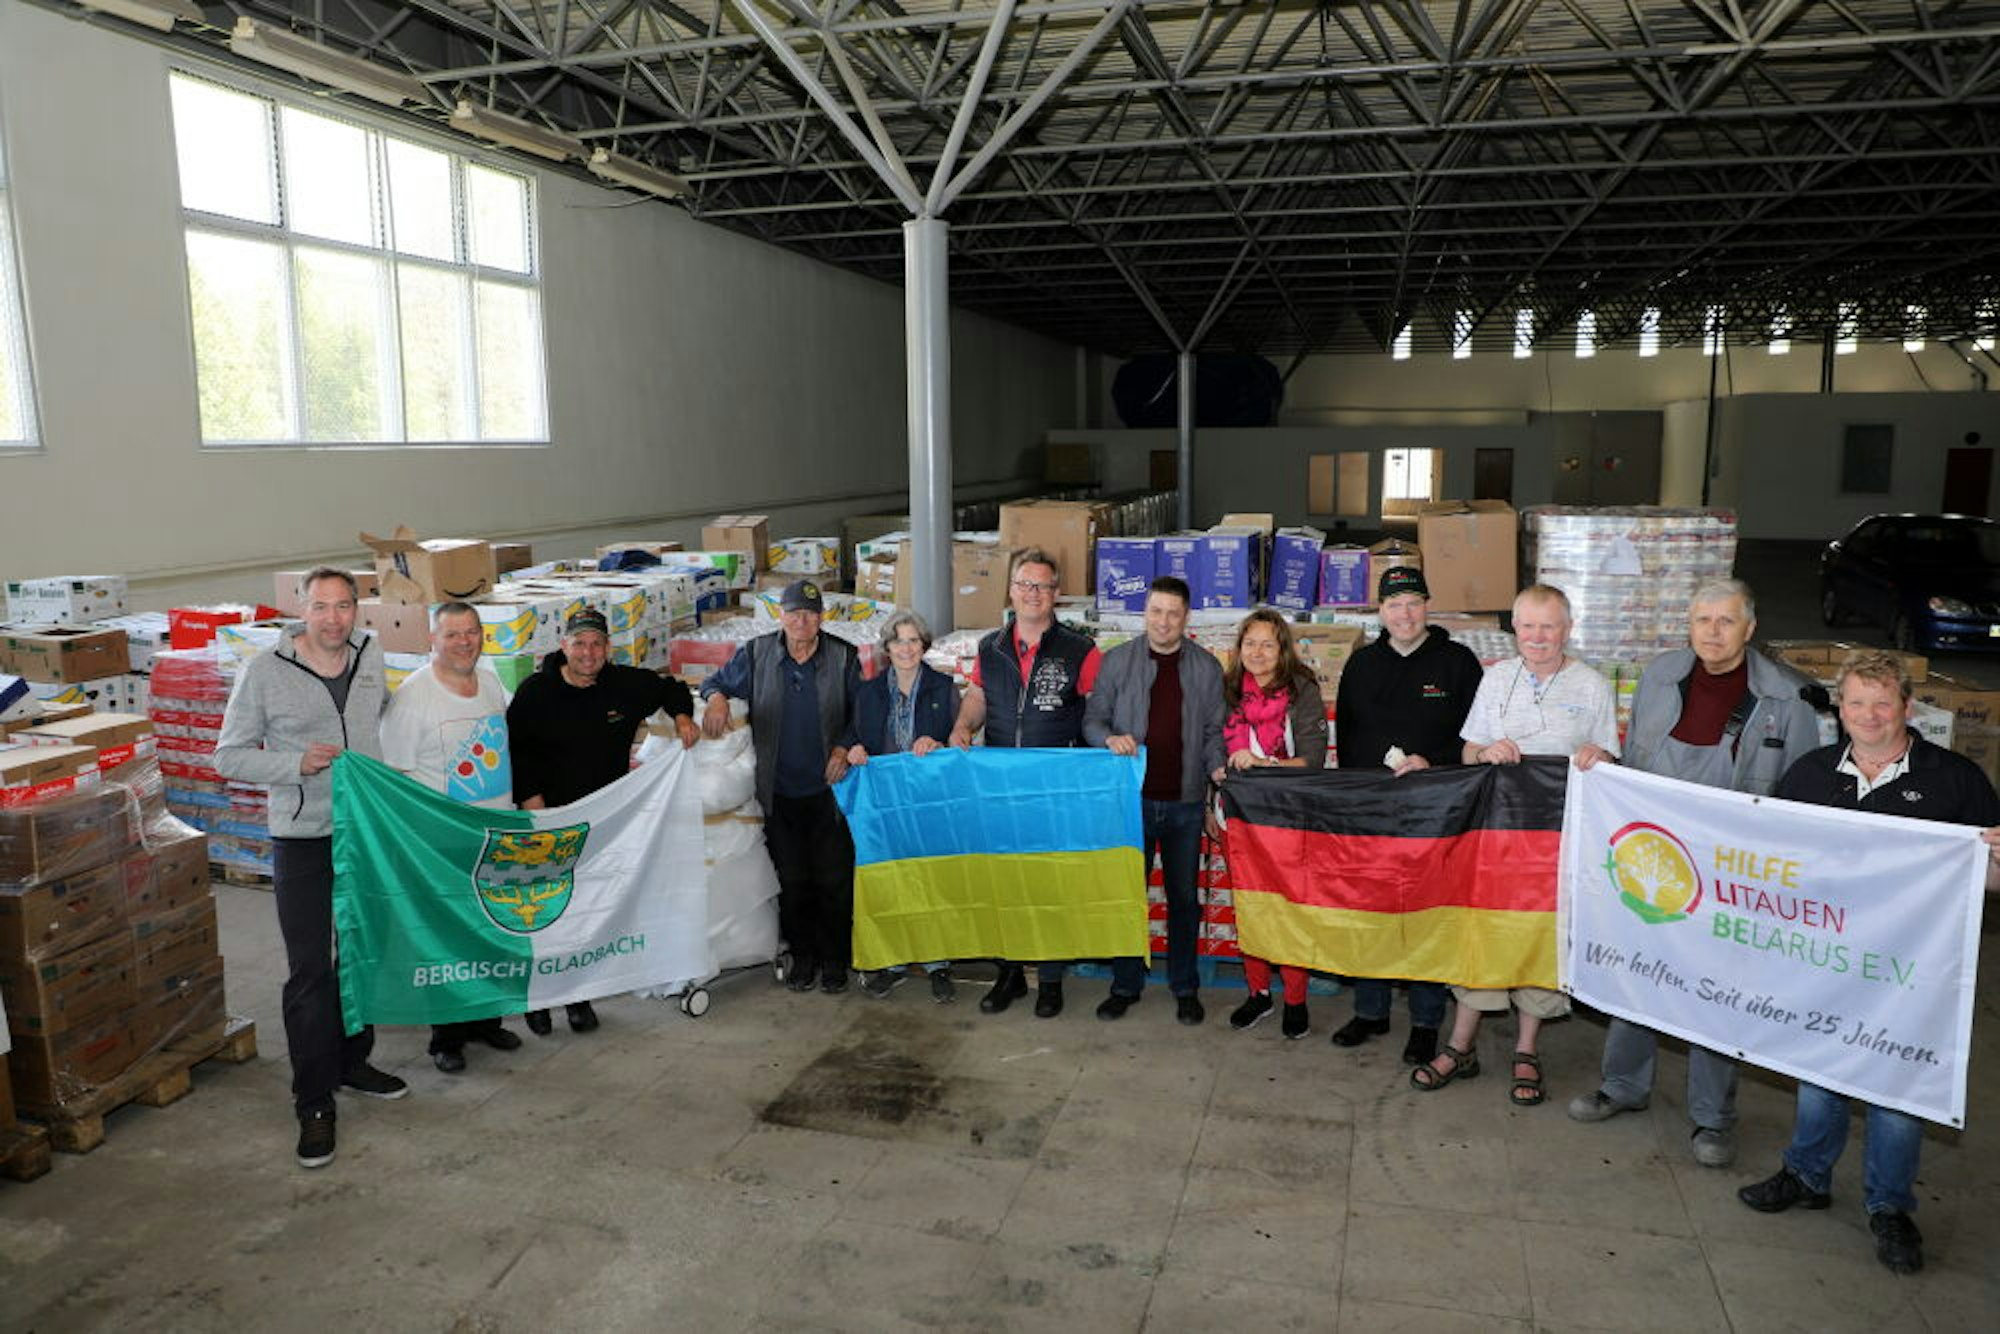 Alles abgeladen: Abschiedsfoto der Hilfskonvoifahrer mit den ukrainischen Partnern, darunter auch Vize-Caritas-Direktor Vasyl Zelenko (zwischen der ukrainischen und der deutschen Fahne).